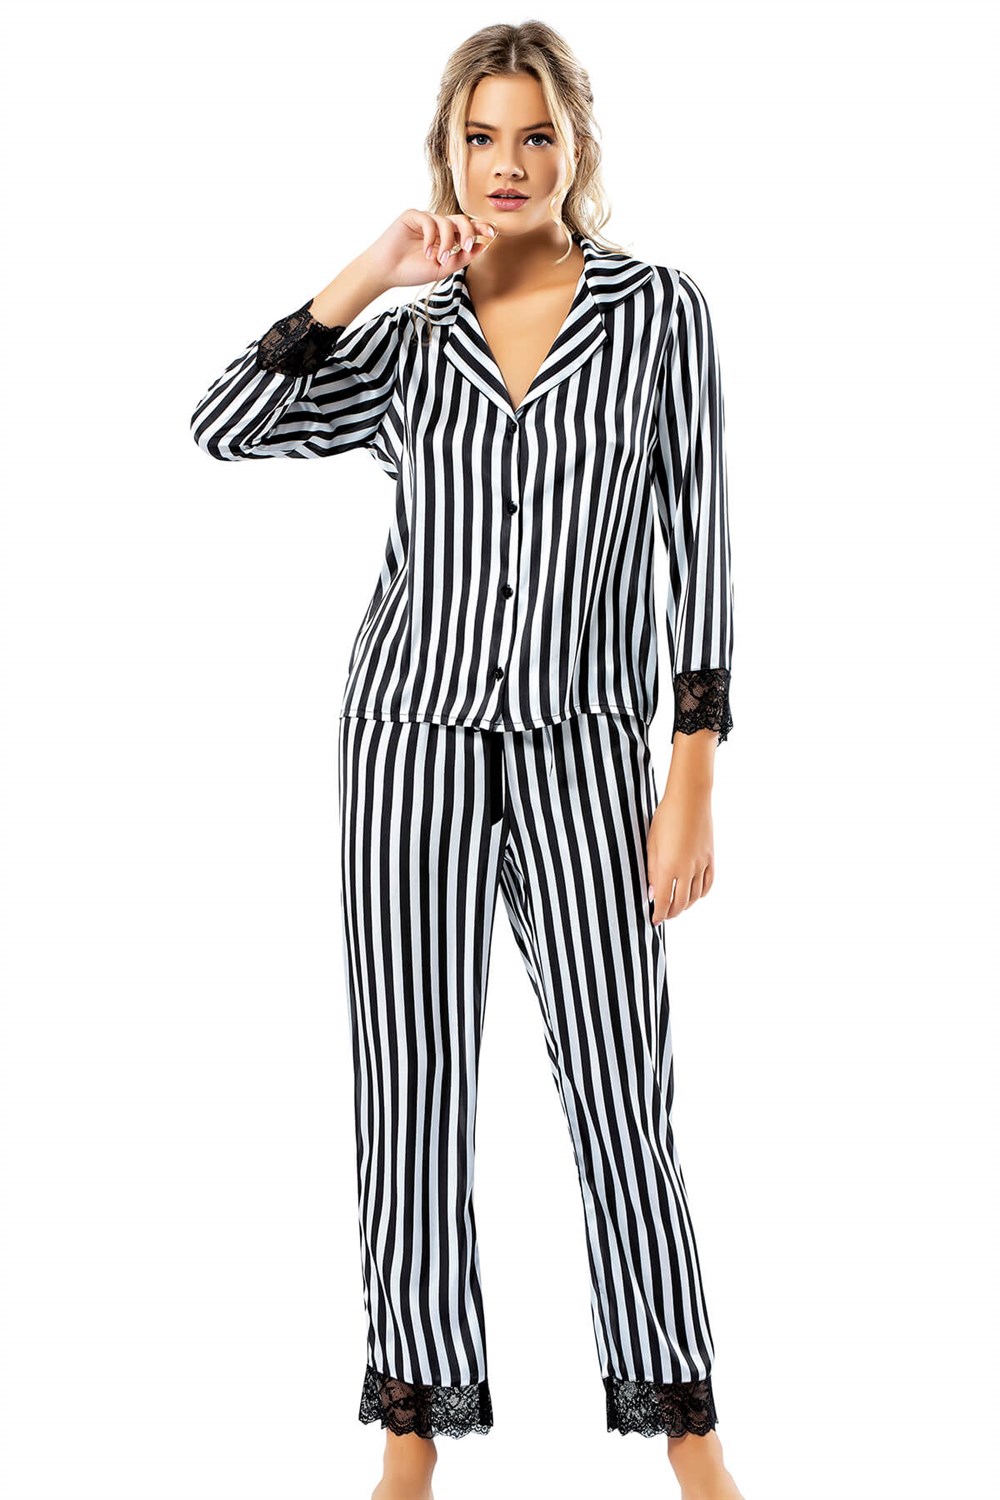 Loriva Çizgili Siyah İkili Saten Gecelik Pijama Takımı | AHU LINGERIE